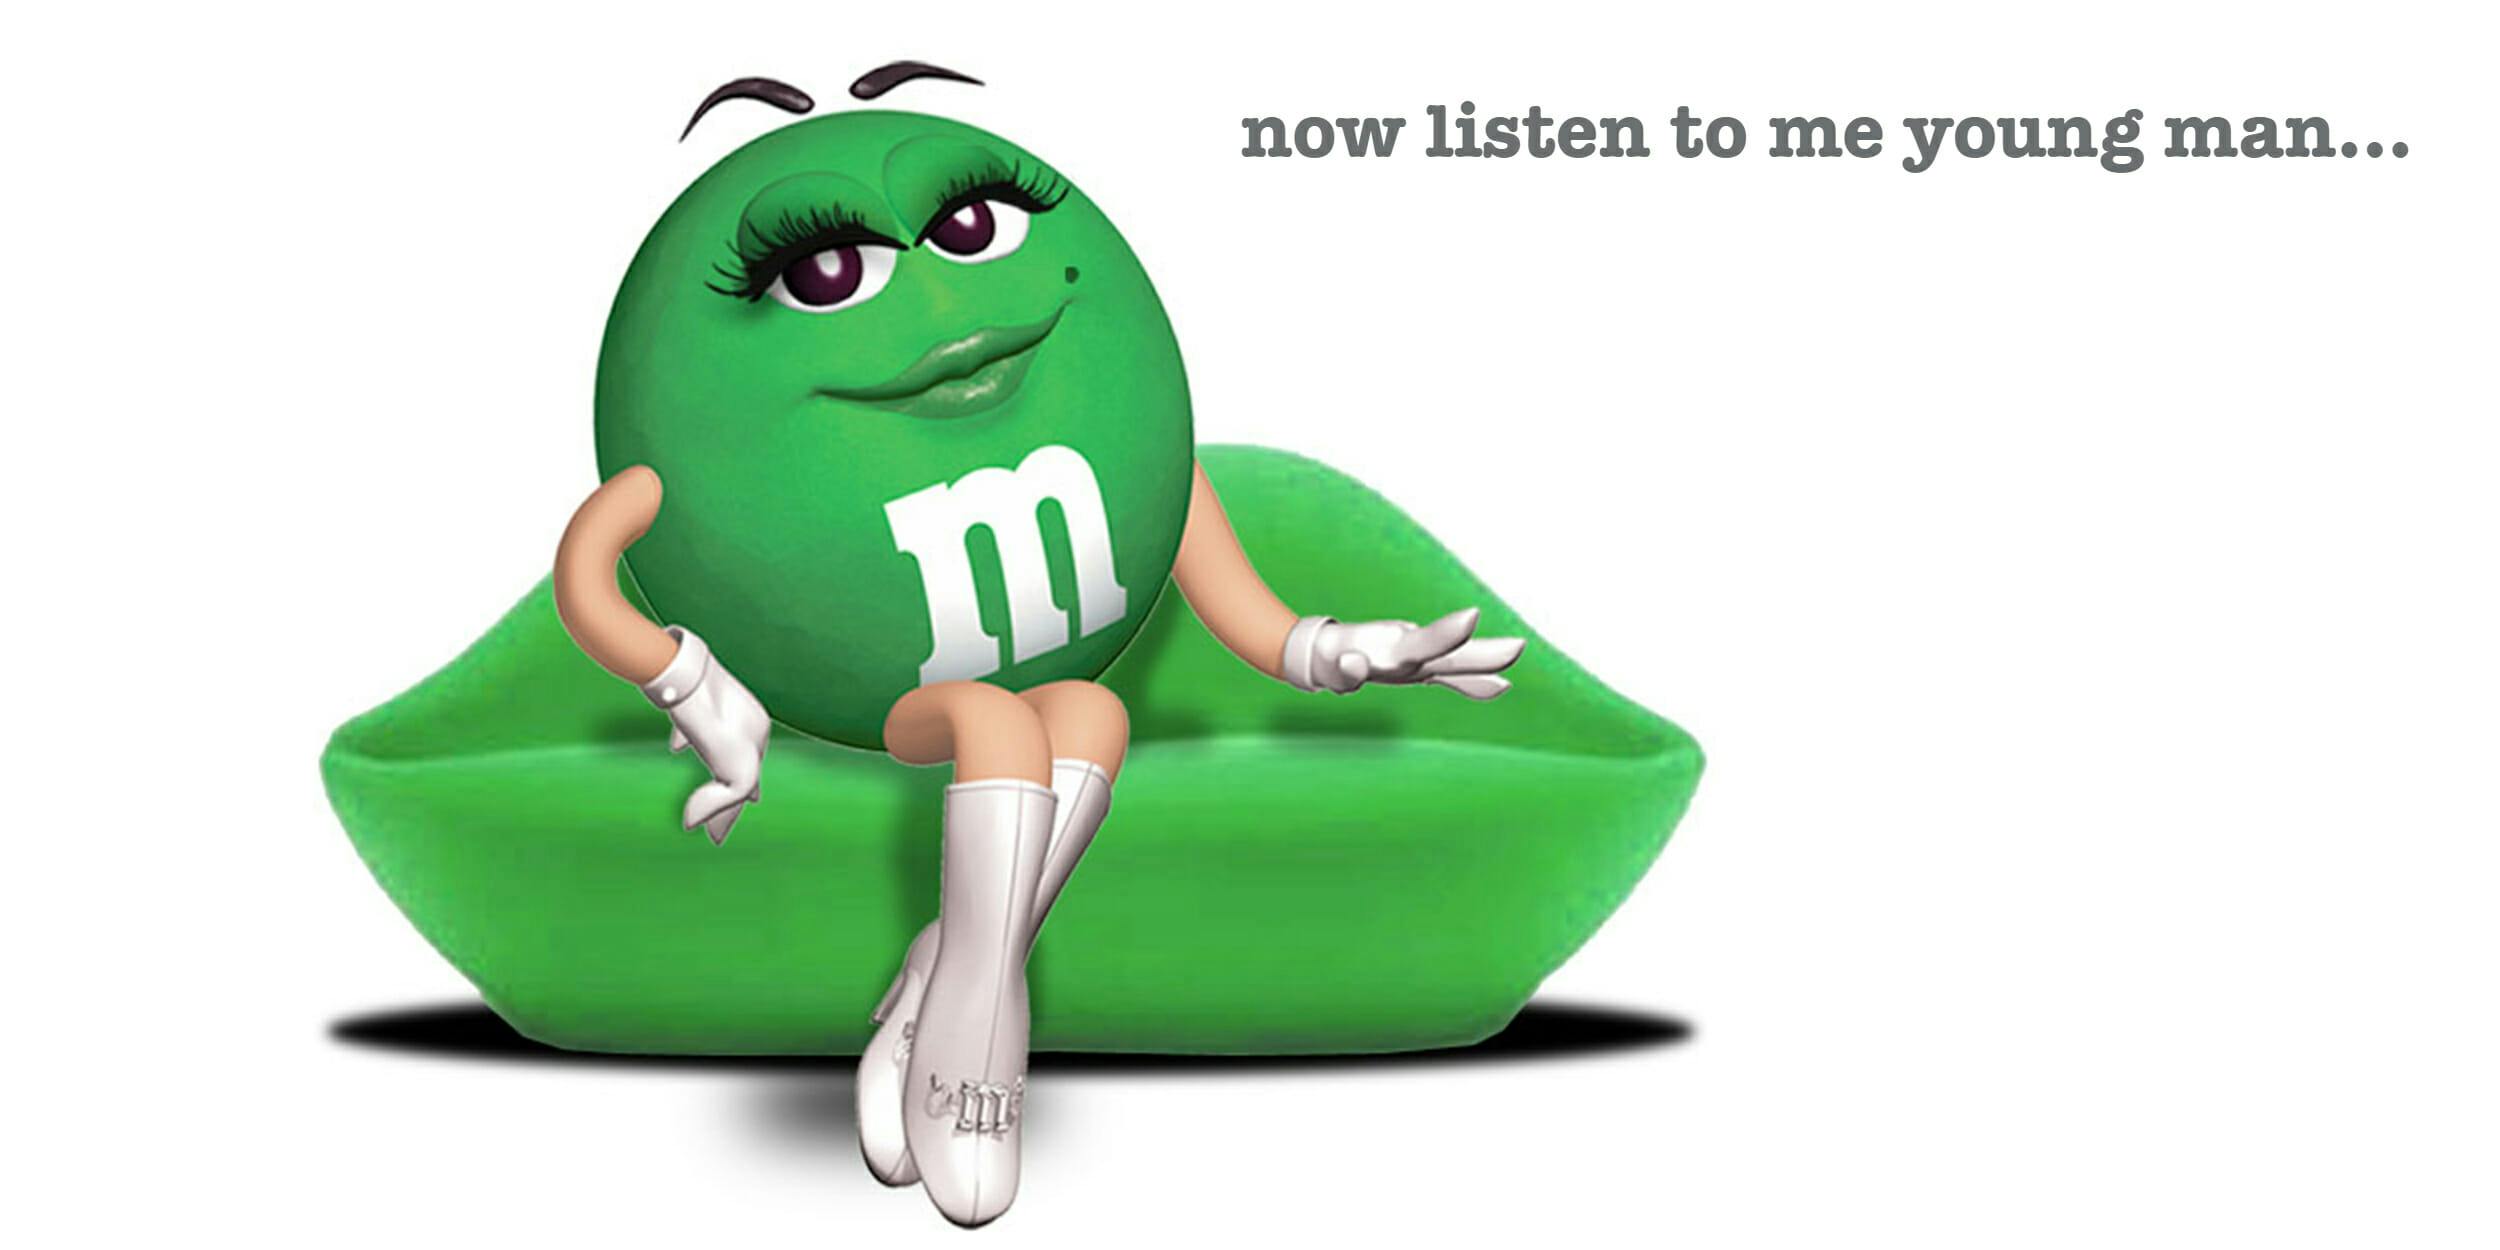 M&m Memes